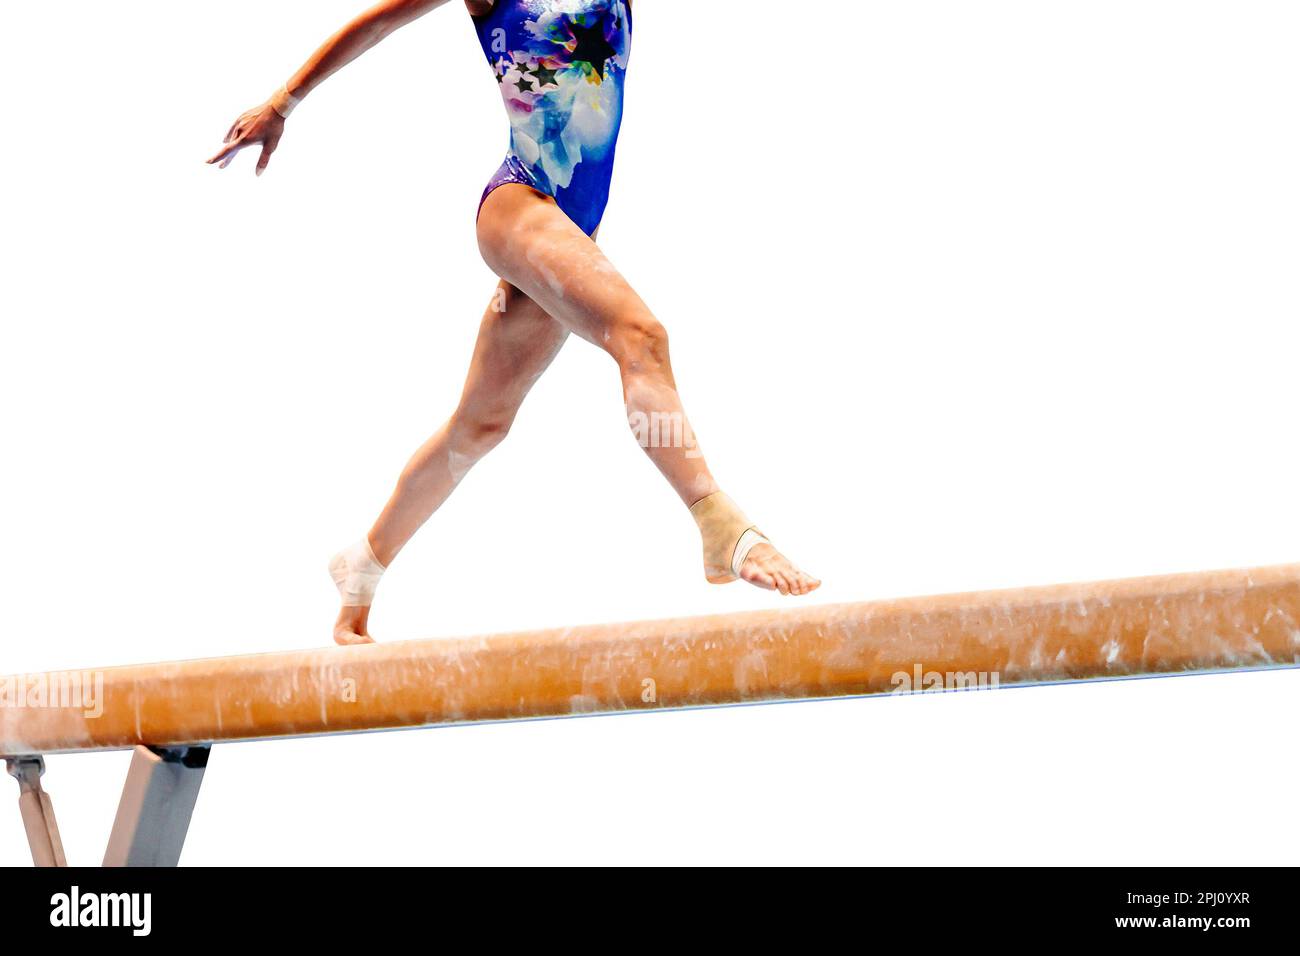 gimnasta femenina de piernas gimnasia de haz de equilibrio de ejercicio sobre fondo blanco, deportes incluidos en juegos de verano Foto de stock